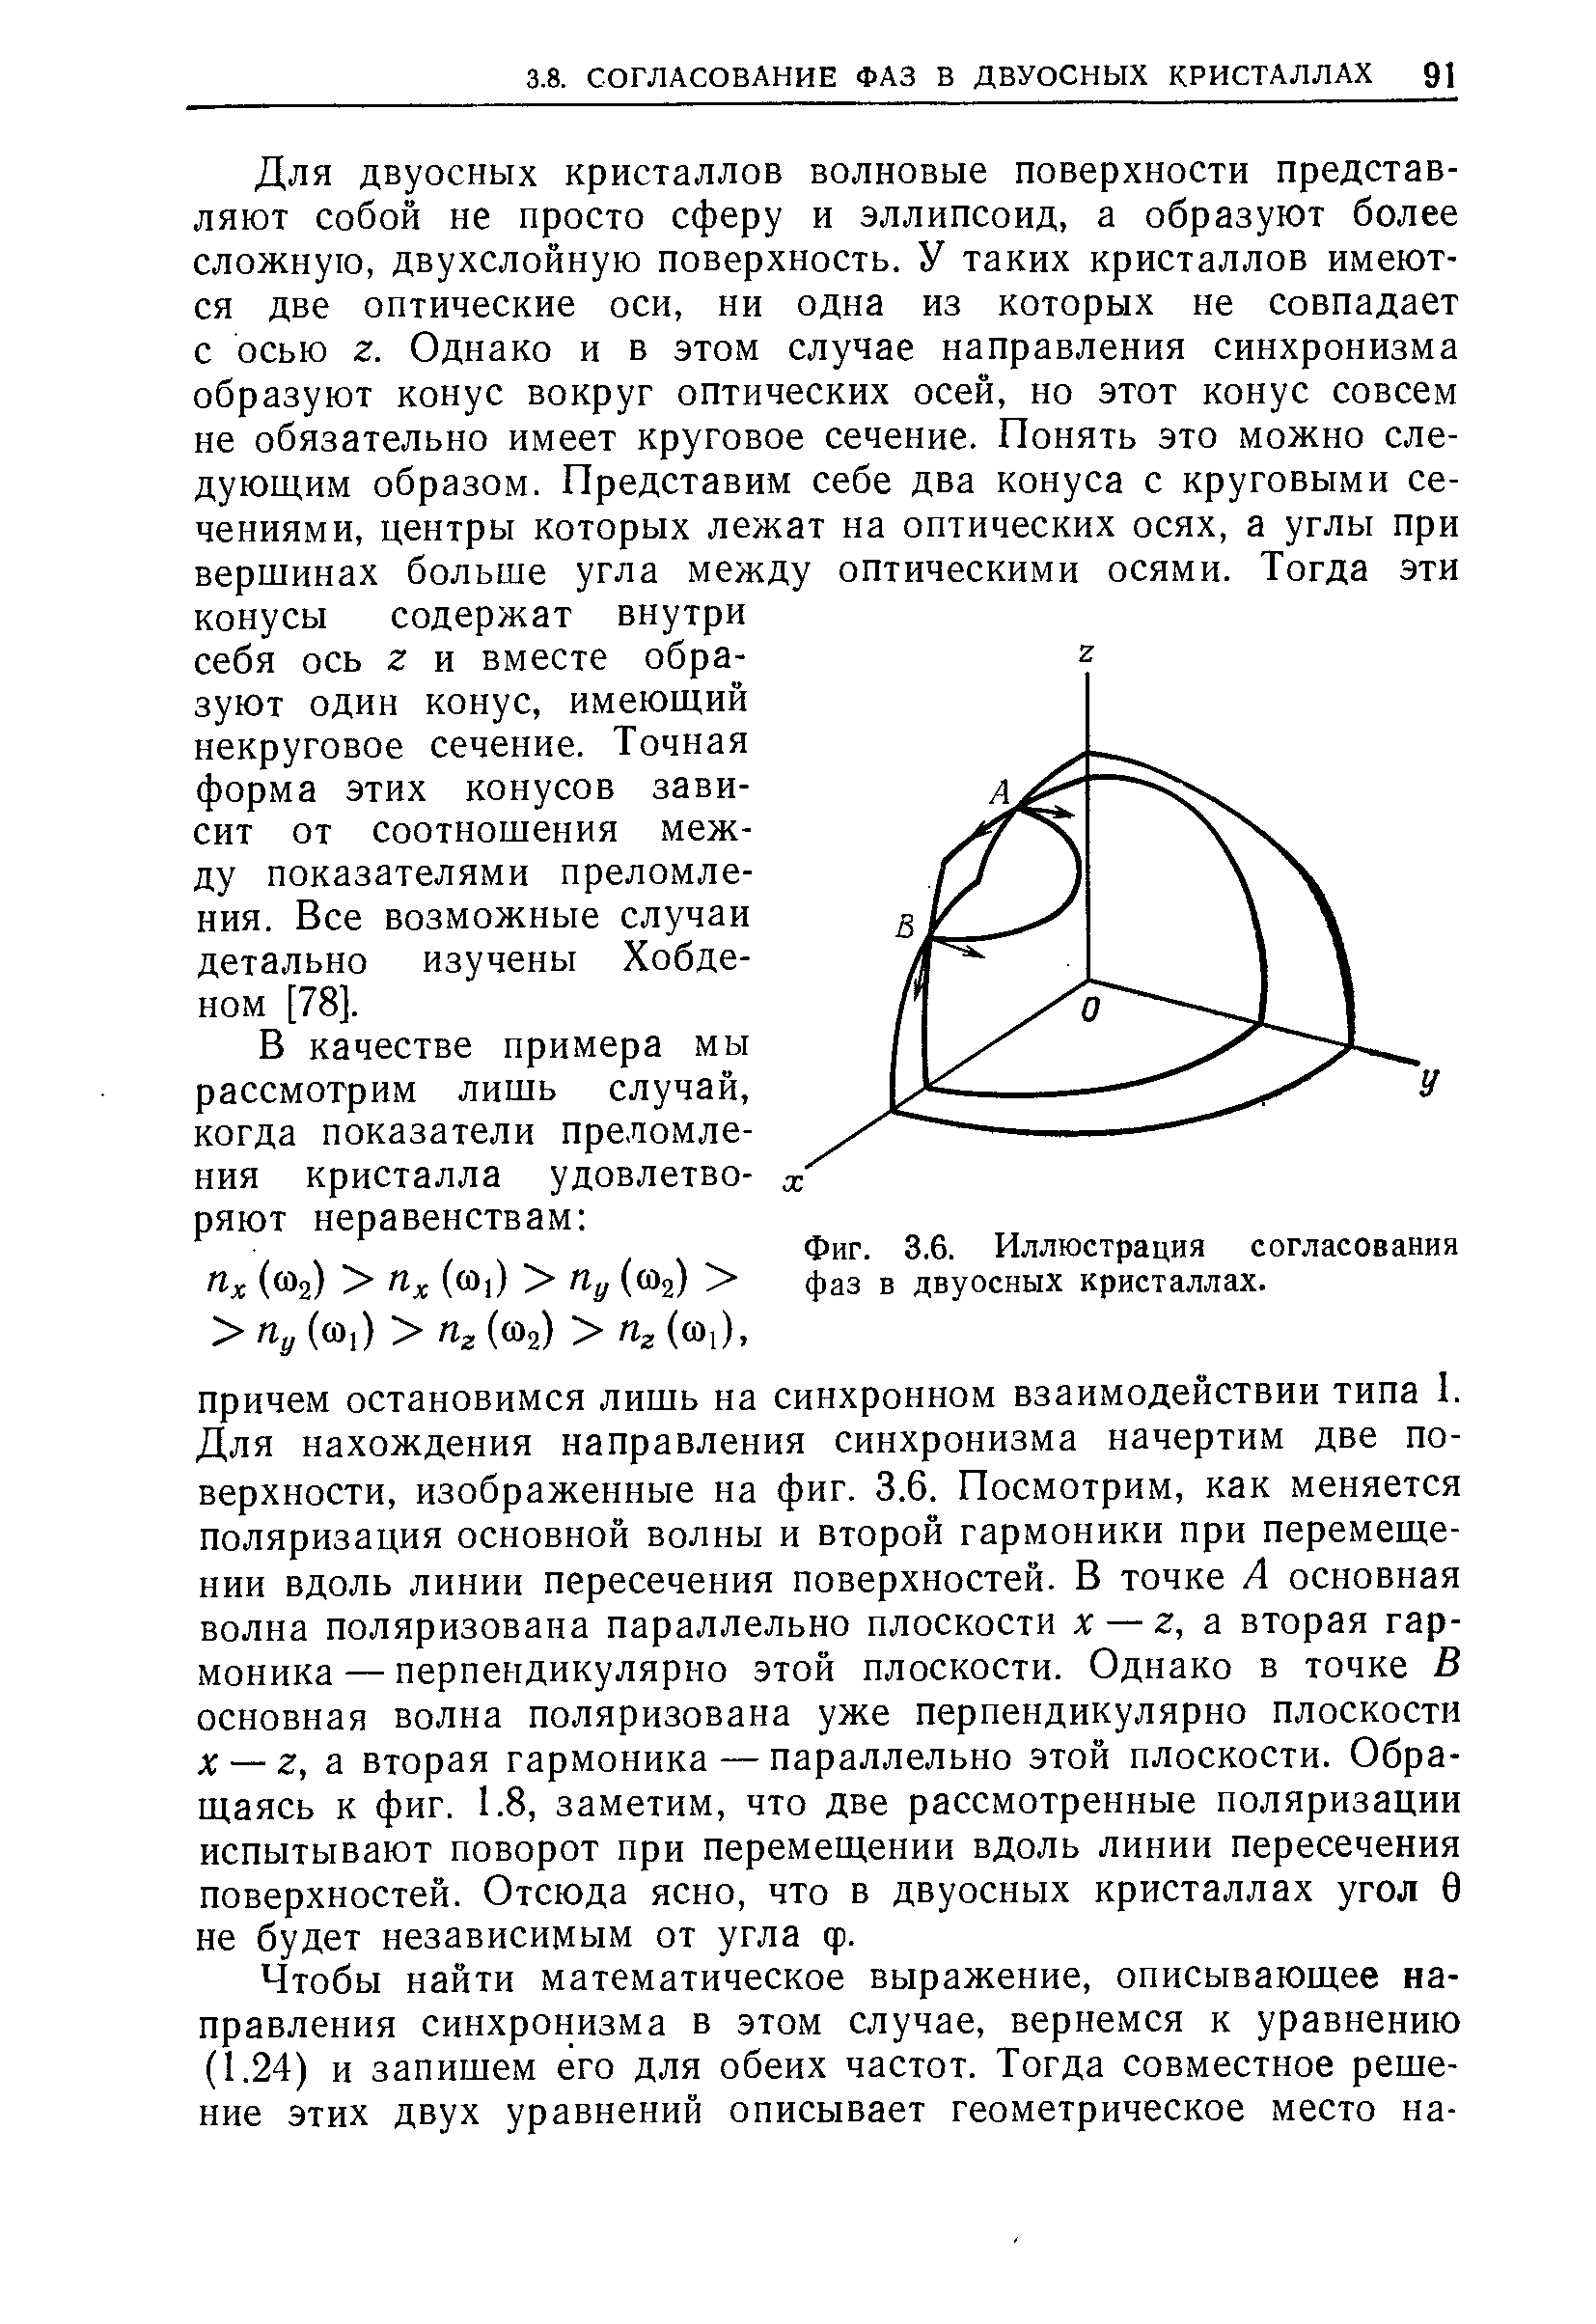 Фиг. 3.6. Иллюстрация согласования фаз в двуосных кристаллах.
